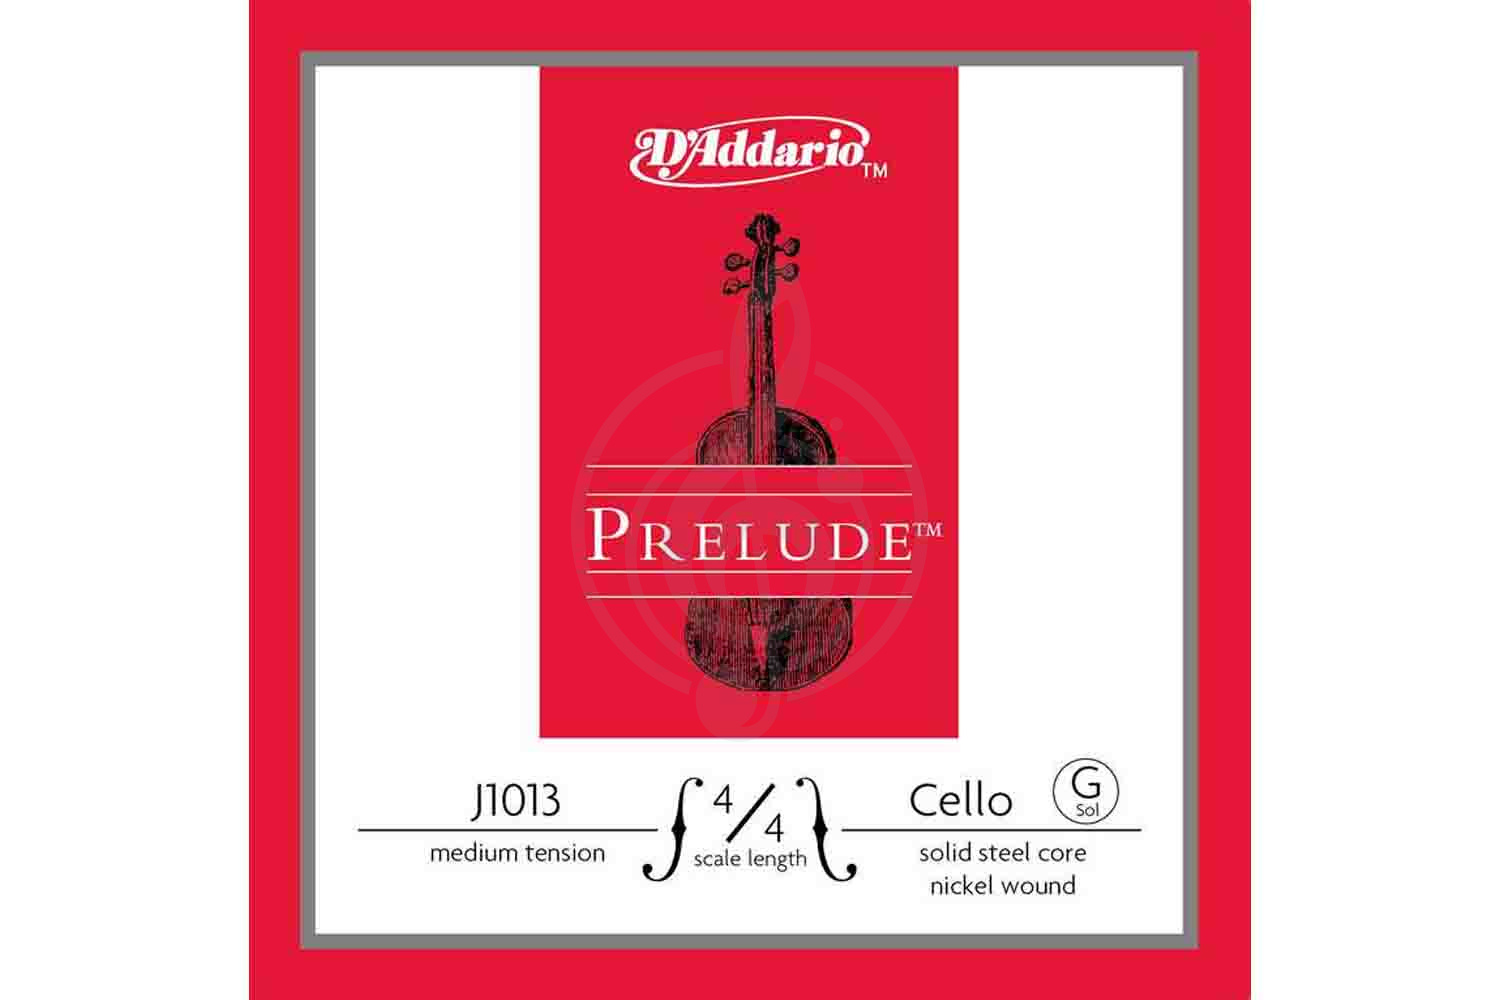 Струны для виолончели D'Addario J1013-4/4M Prelude - Отдельная струна Соль/G для виолончели 4/4, среднее натяжение, D'Addario J1013-4/4M Prelude в магазине DominantaMusic - фото 1